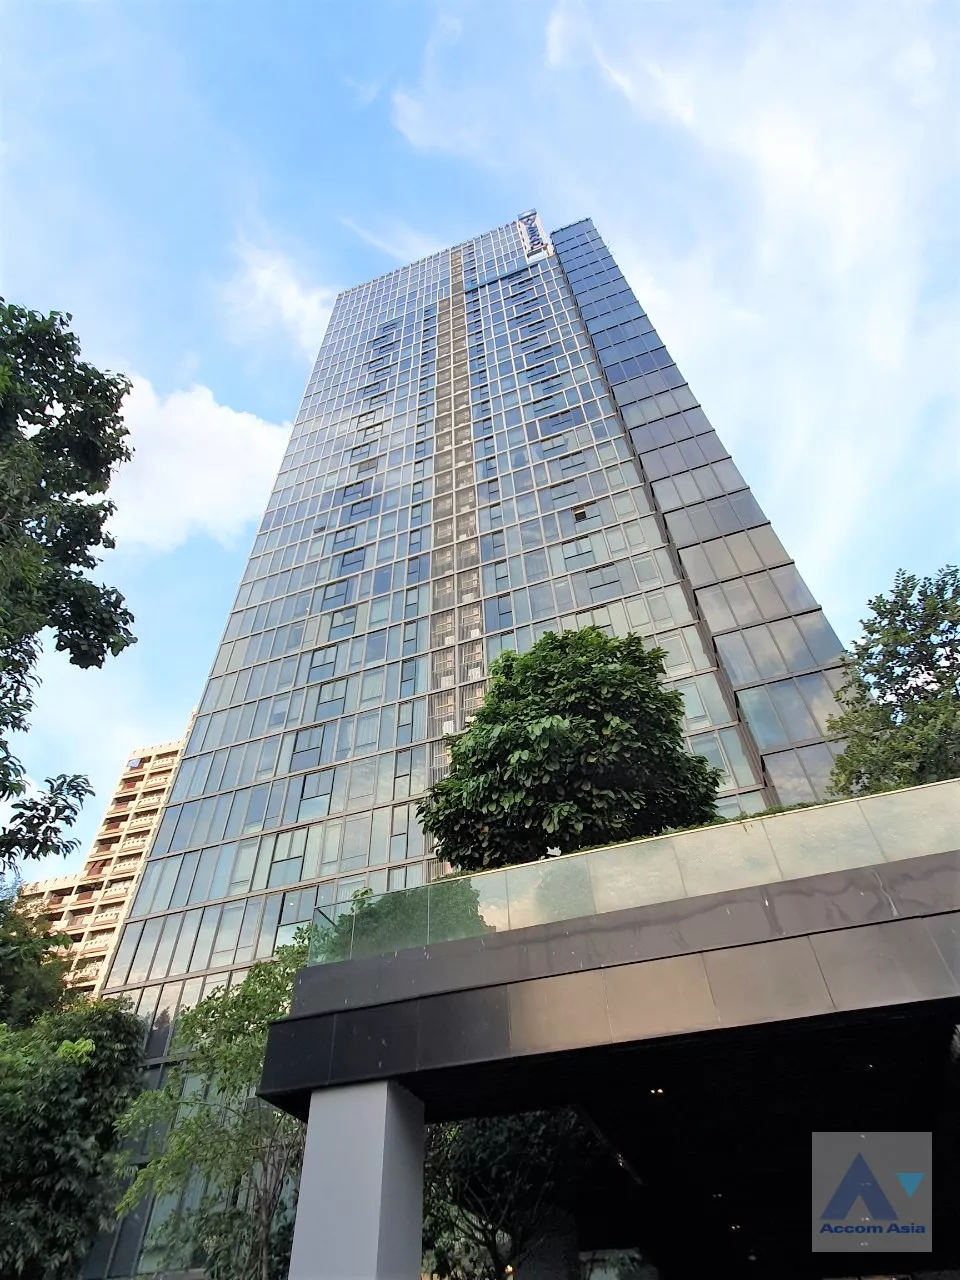 5 Siamese Exclusive Queens - Condominium -  - Bangkok / Accomasia